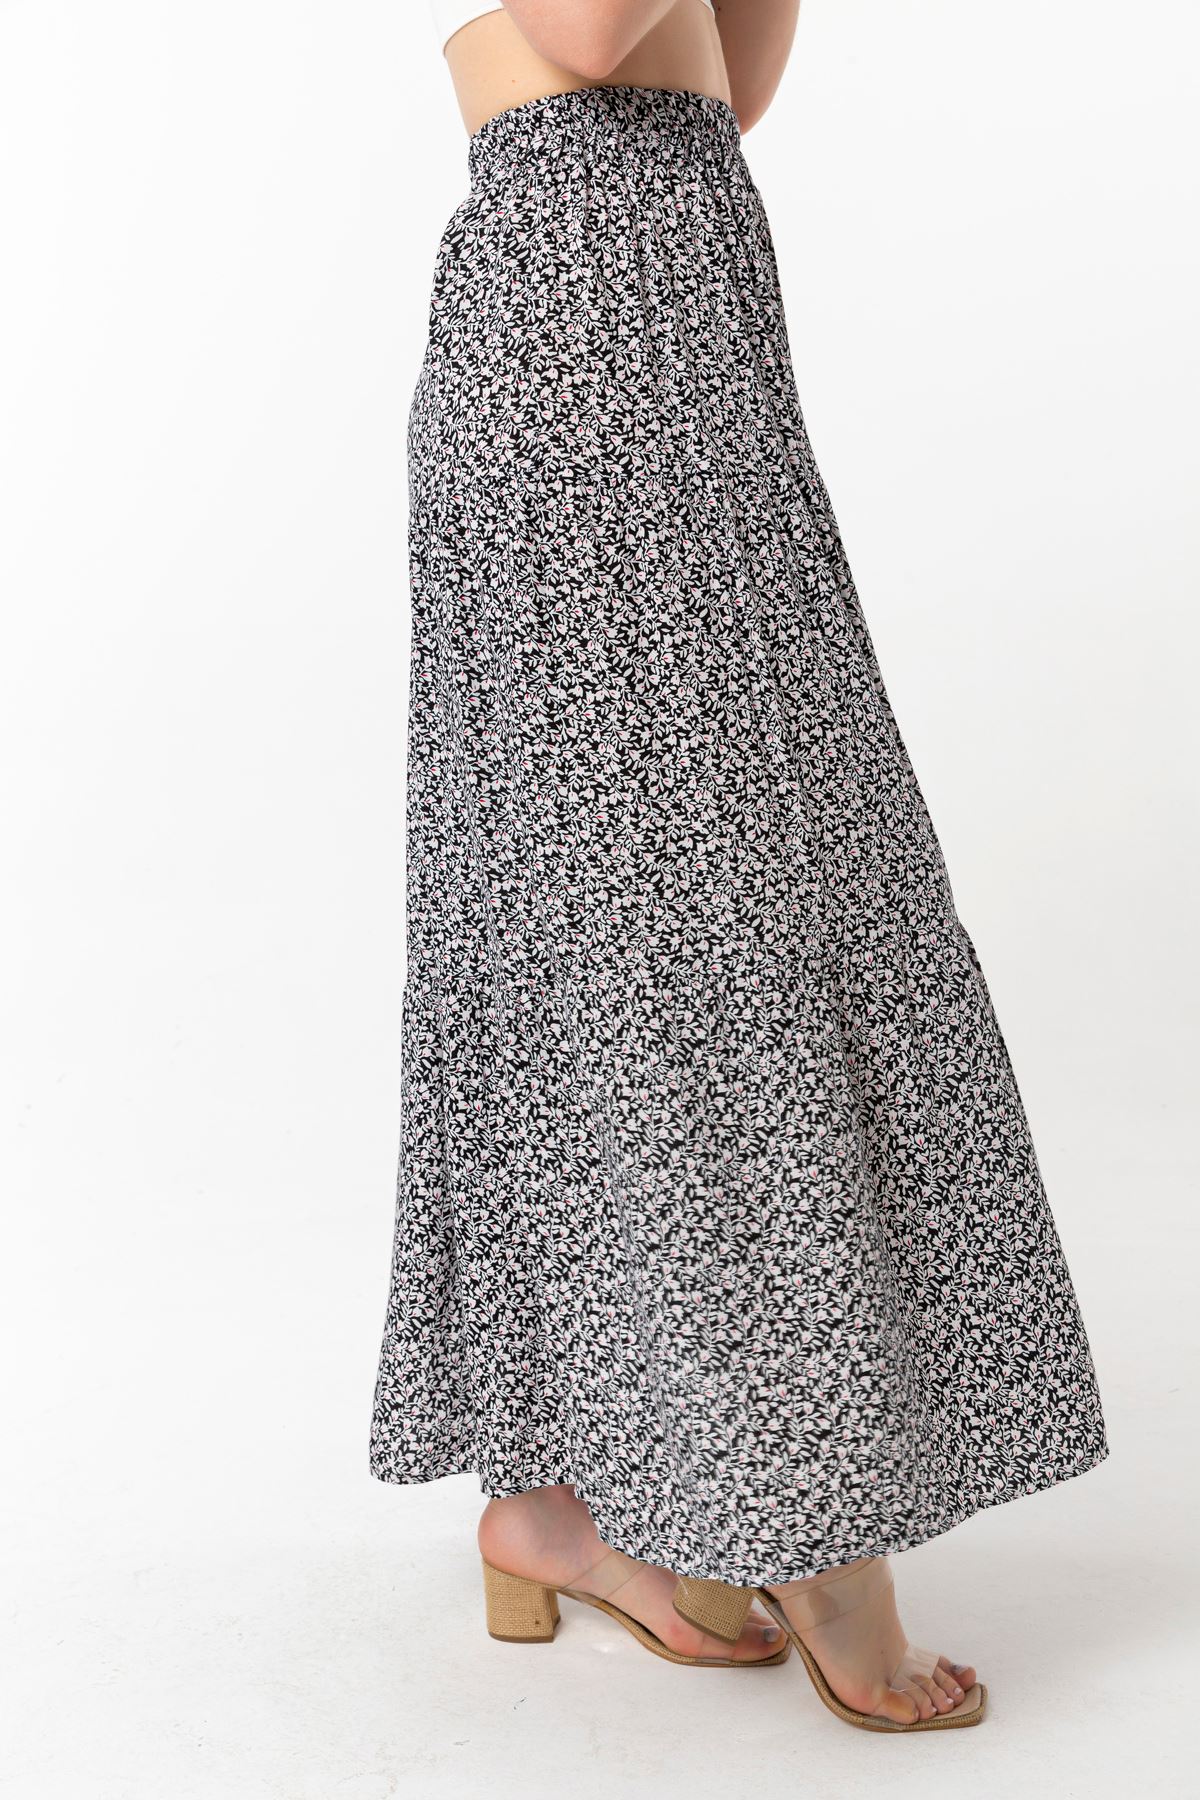 вискоза ткань длинный цветочный юбка с узорами - Чёрный